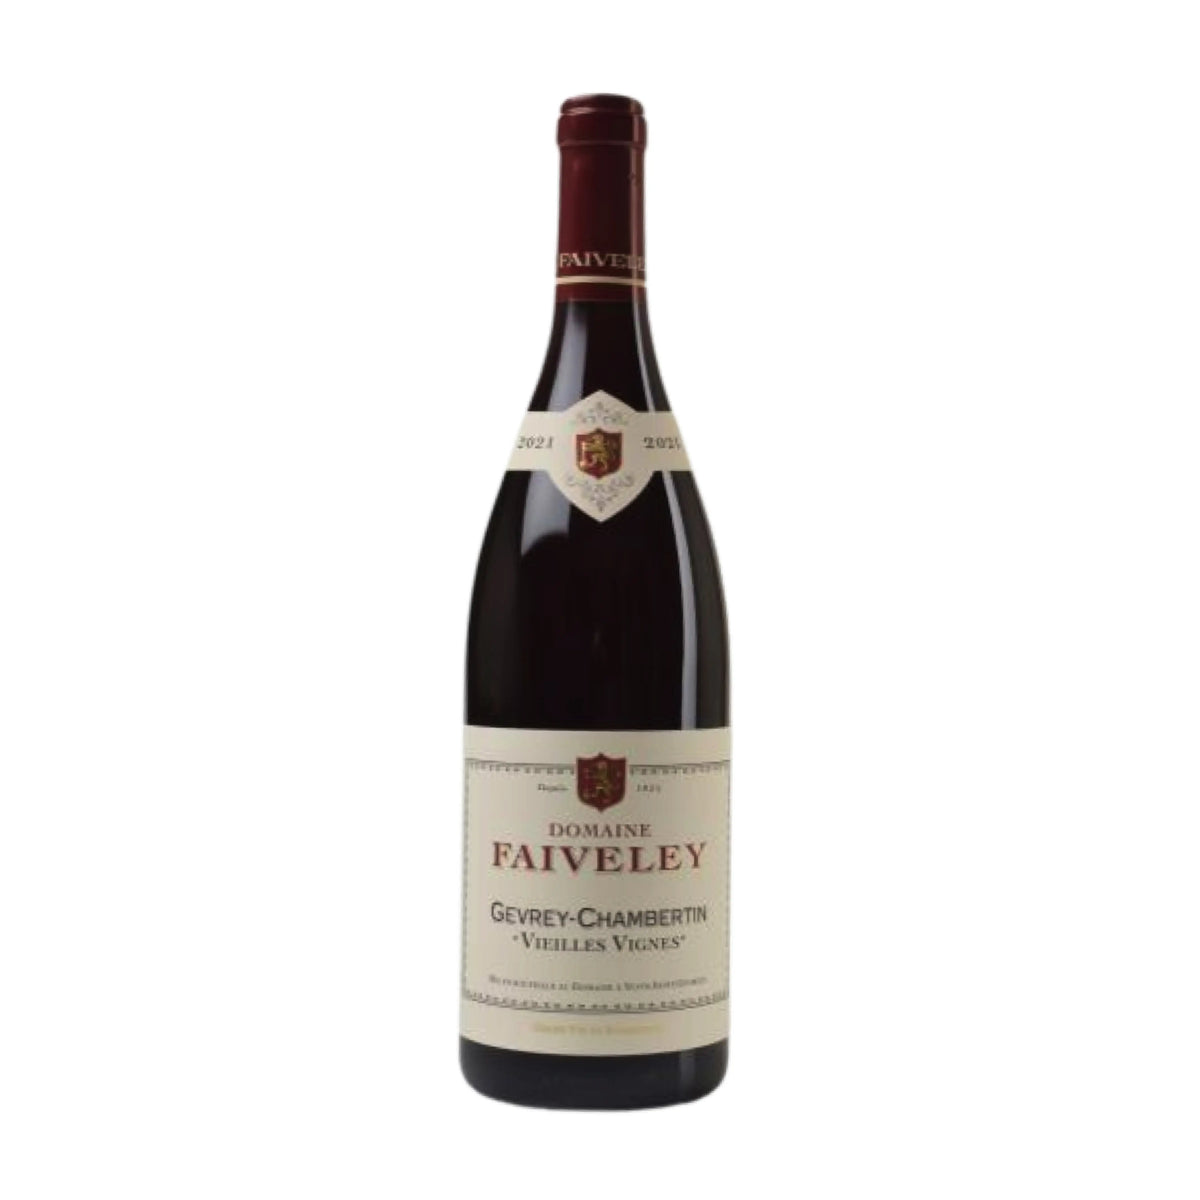 Domaine Faiveley-Rotwein-Pinot Noir-2021 Gevrey-Chambertin Vieilles Vignes-WINECOM